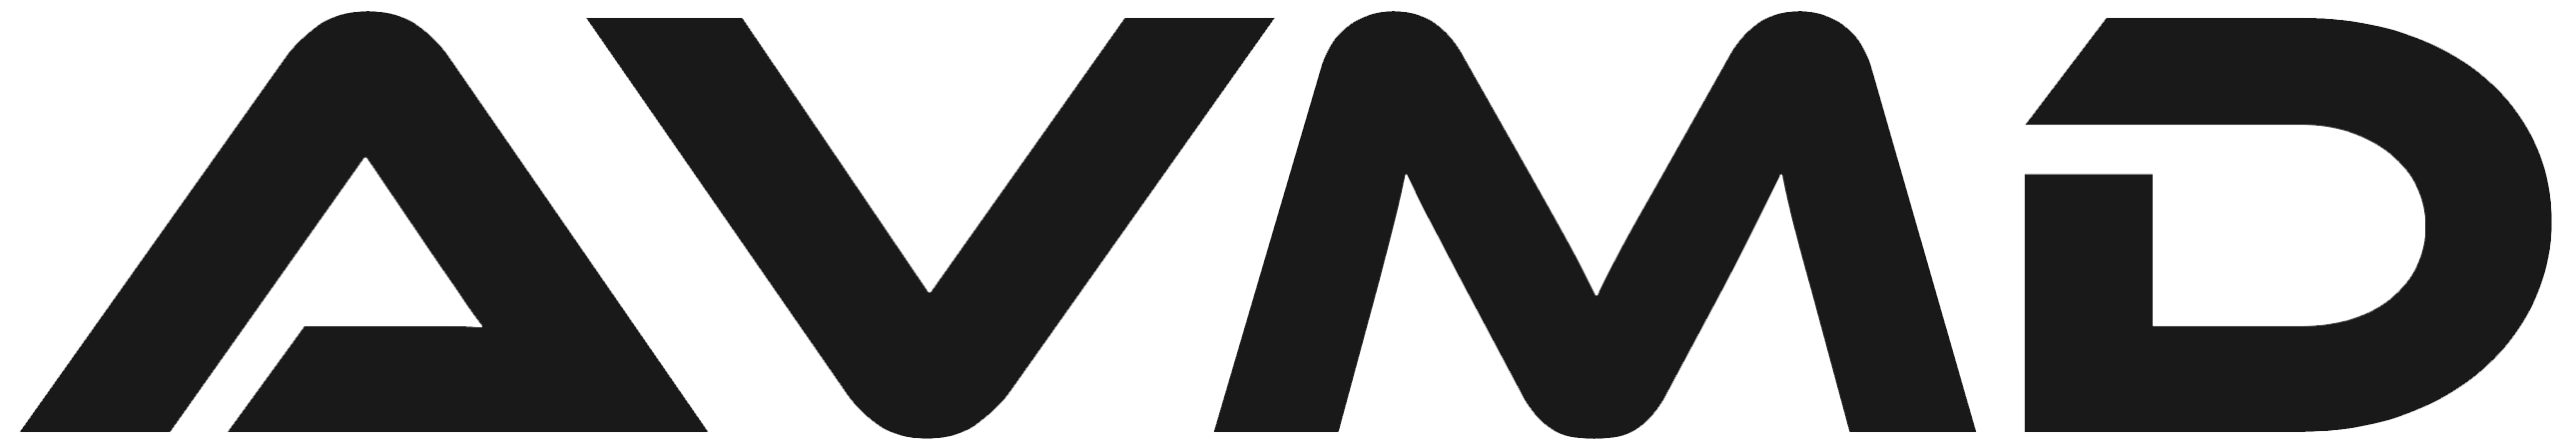 Logo AVMD detouré sans fond